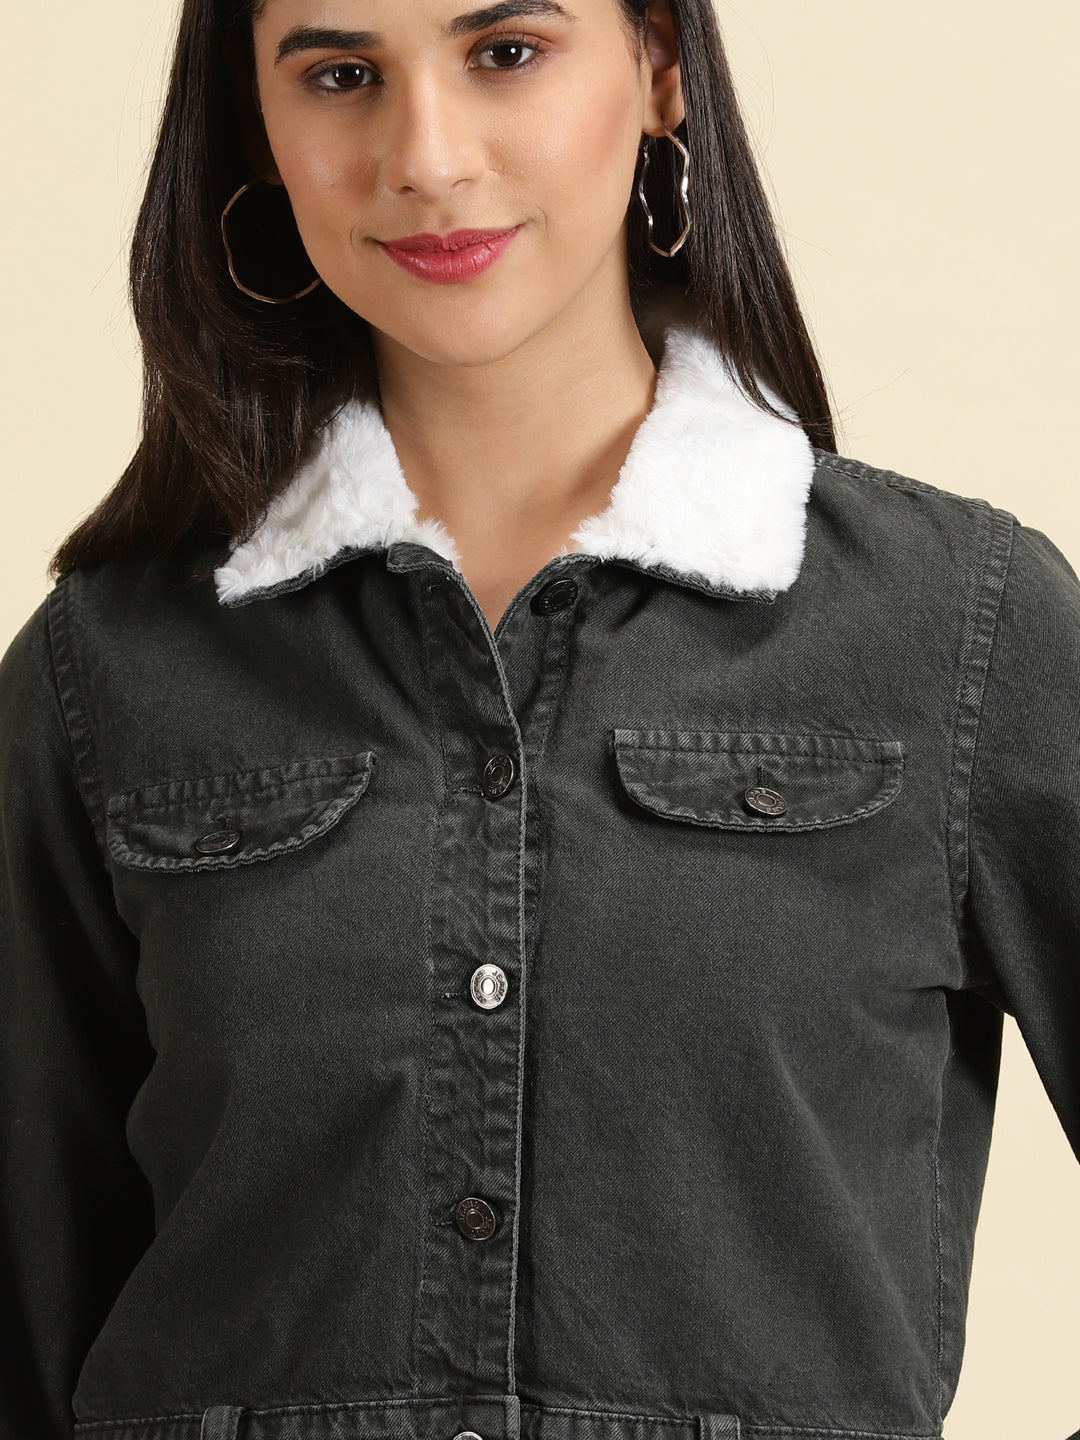 Women's Grey Solid Denim Jacket